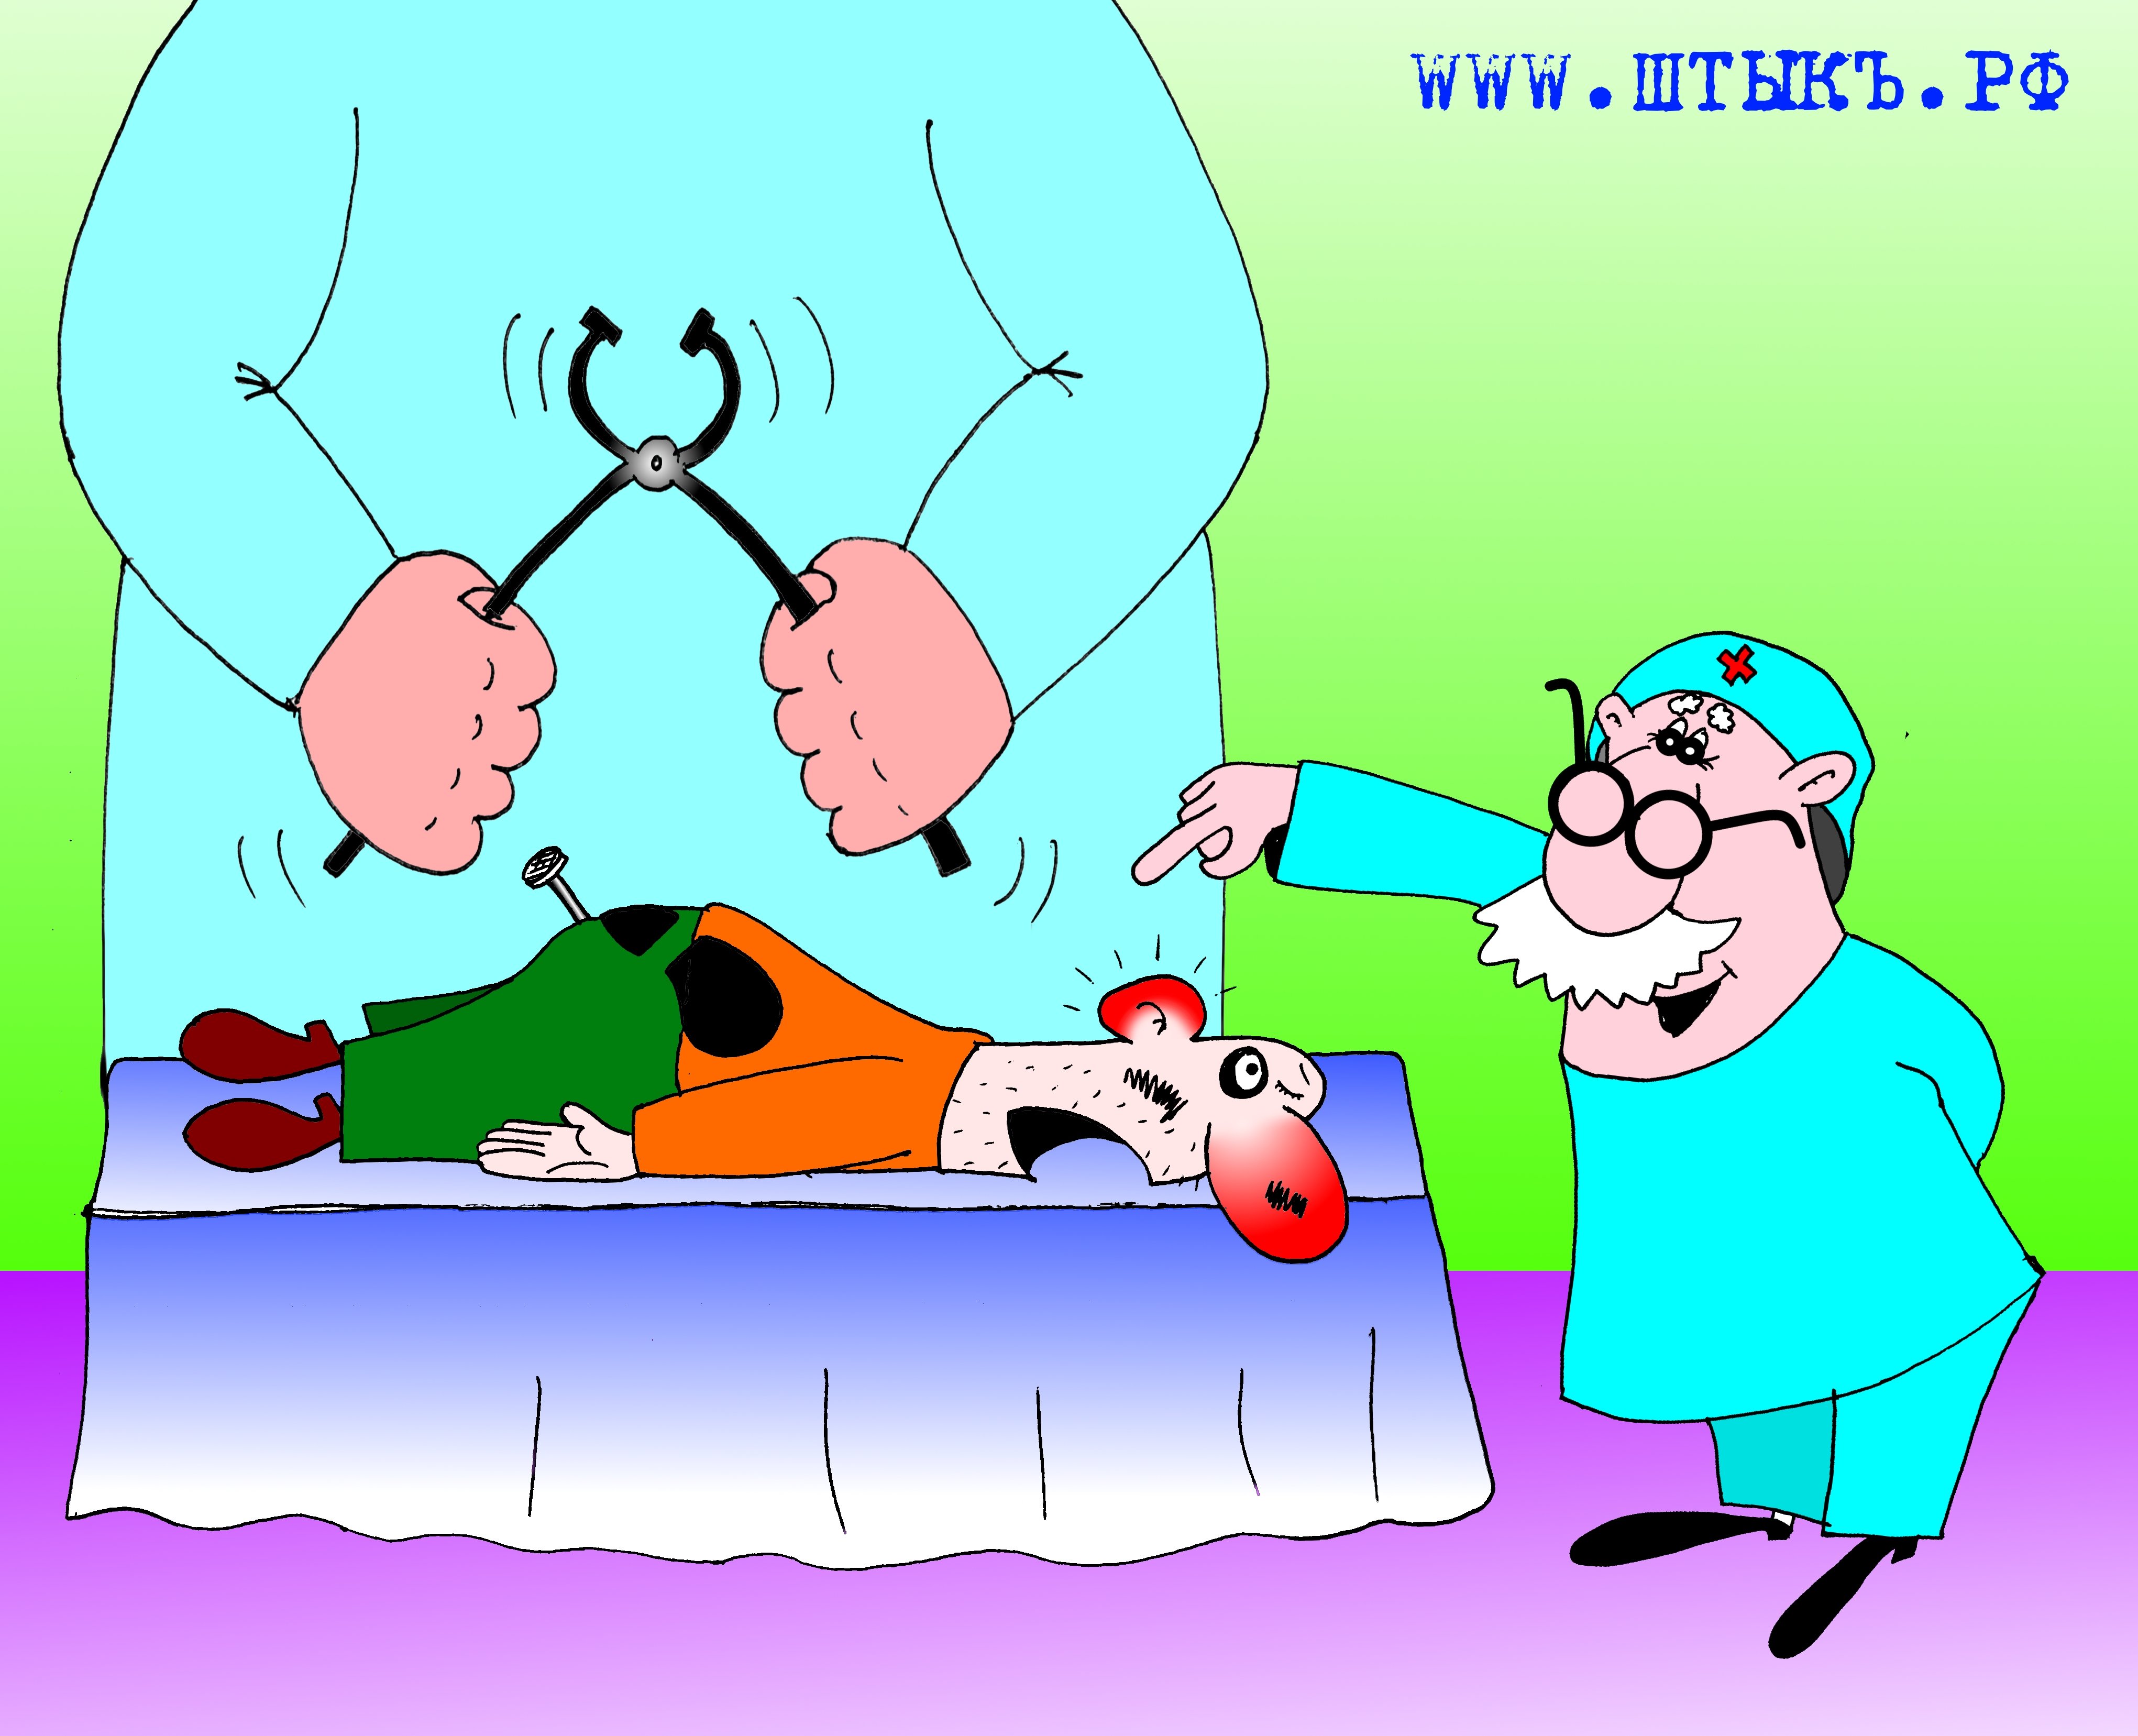 Картинка смешная больным. Смешные карикатуры про медицину. Врач и пациент карикатура. Хирург карикатура. Смешные шутки про врачей.